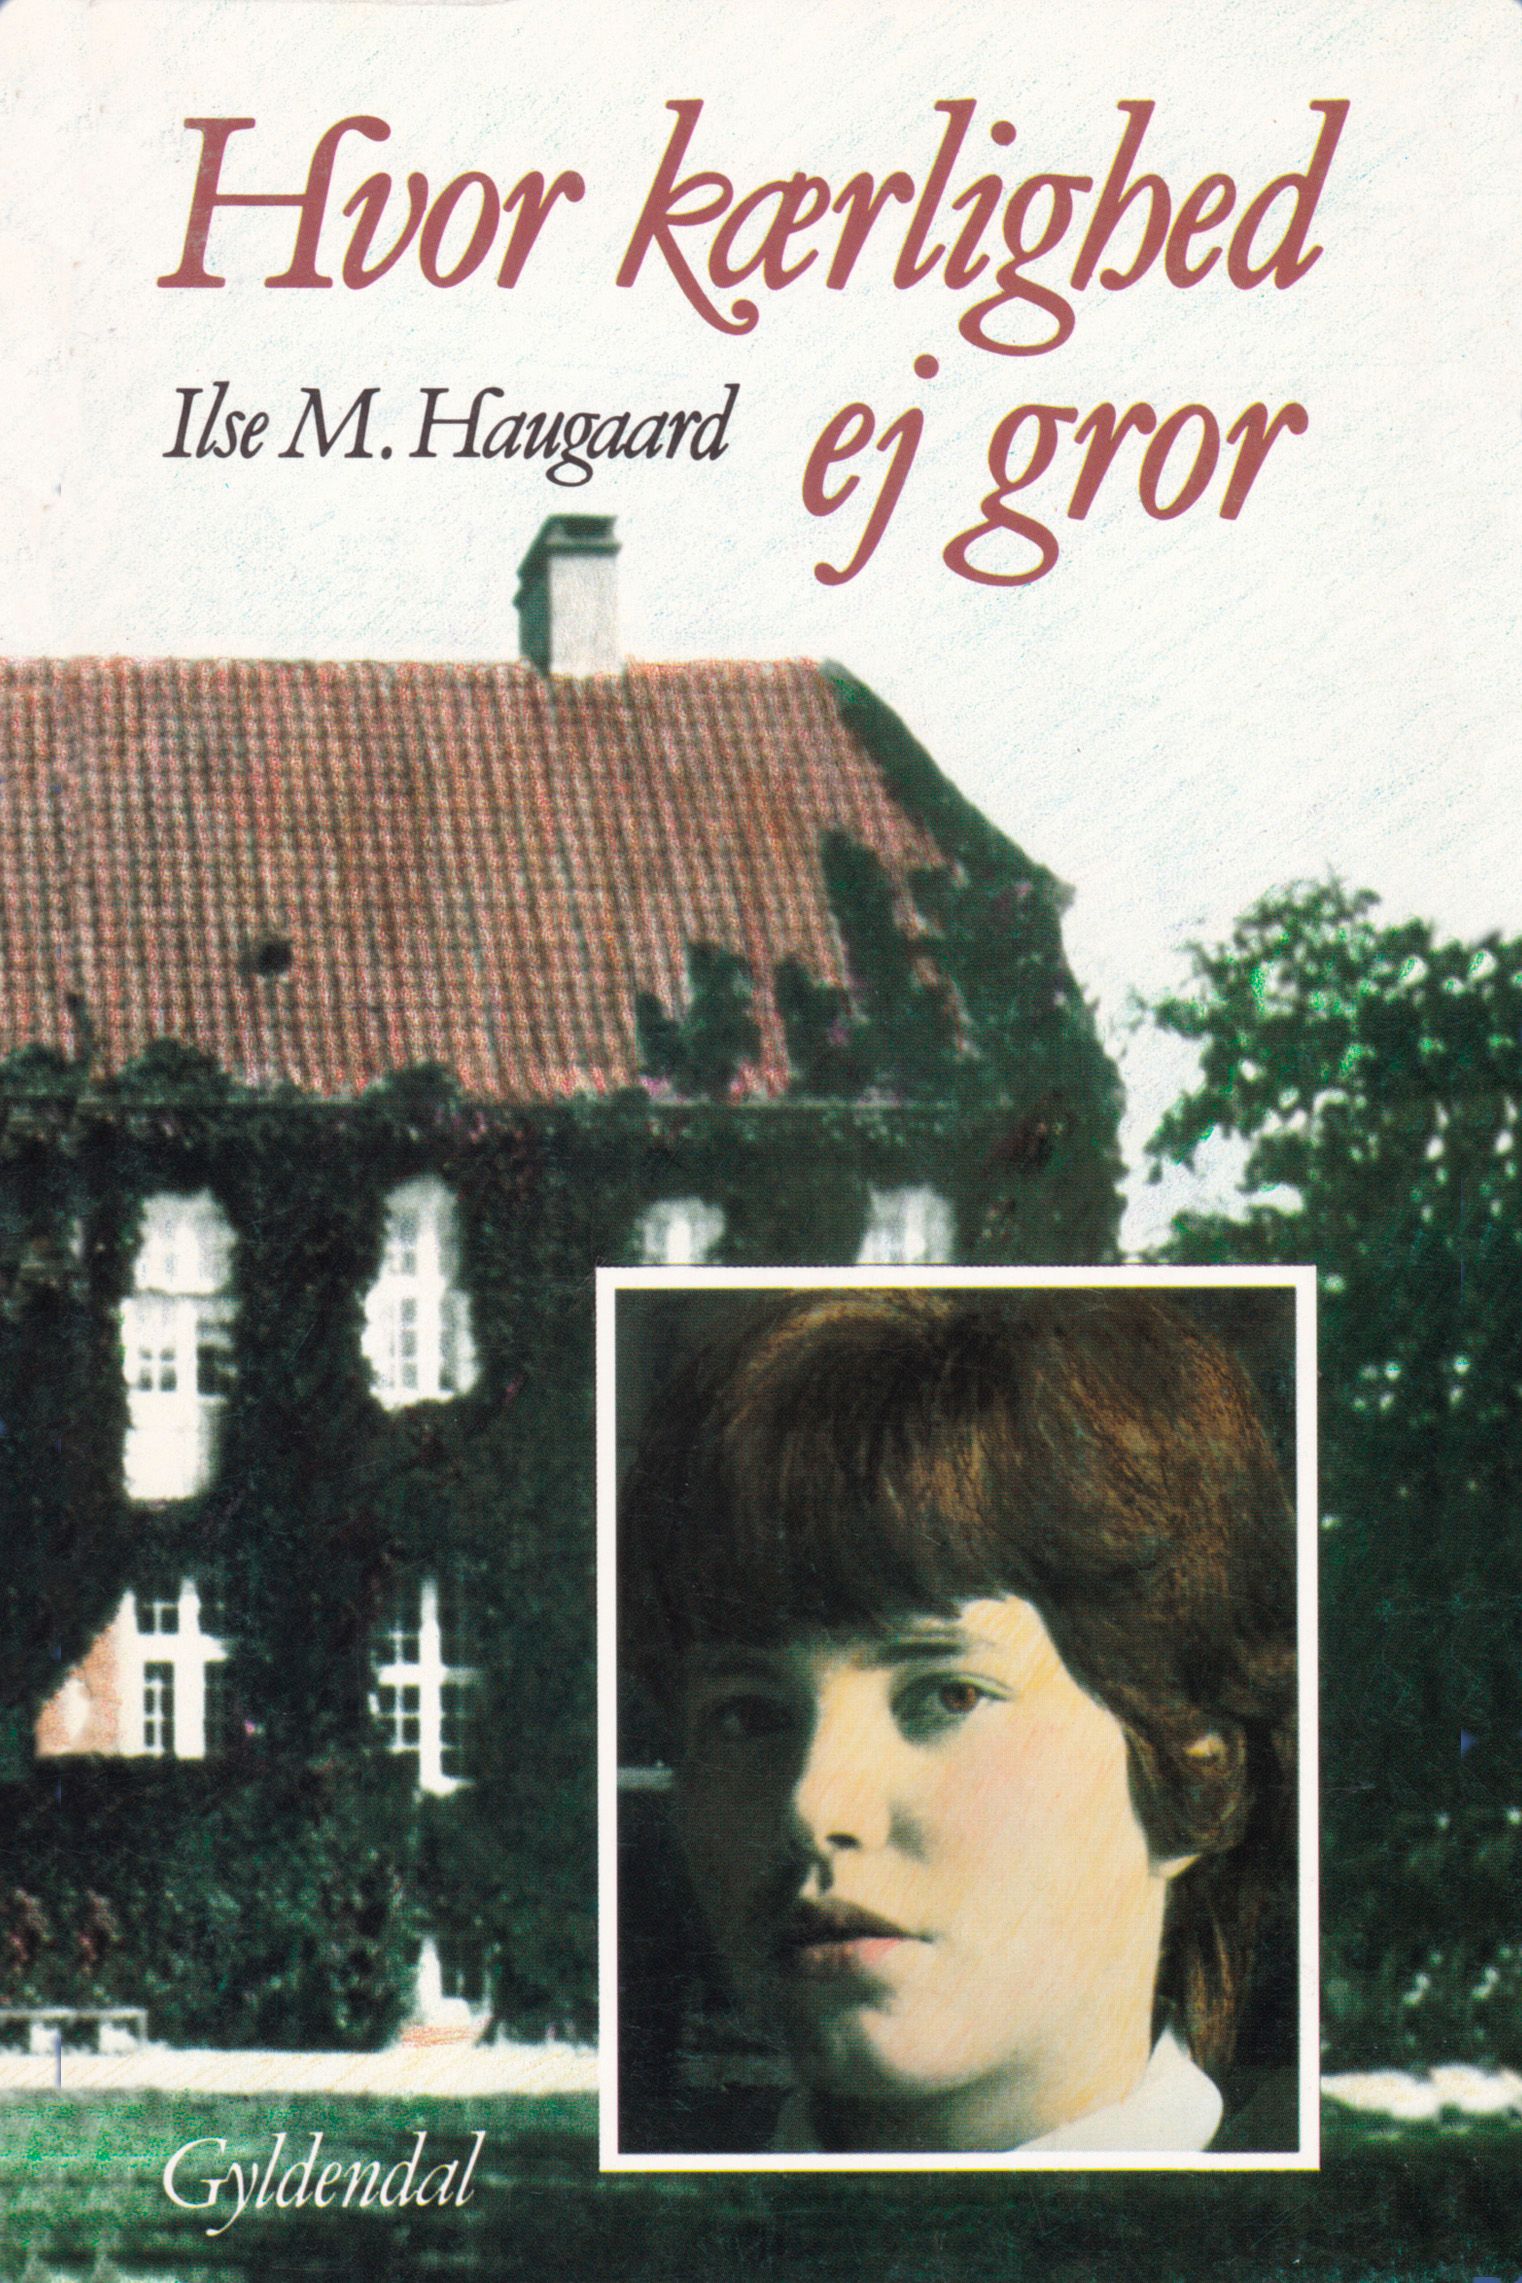 Hvor kærlighed ej gror, eBook by Ilse M. Haugaard